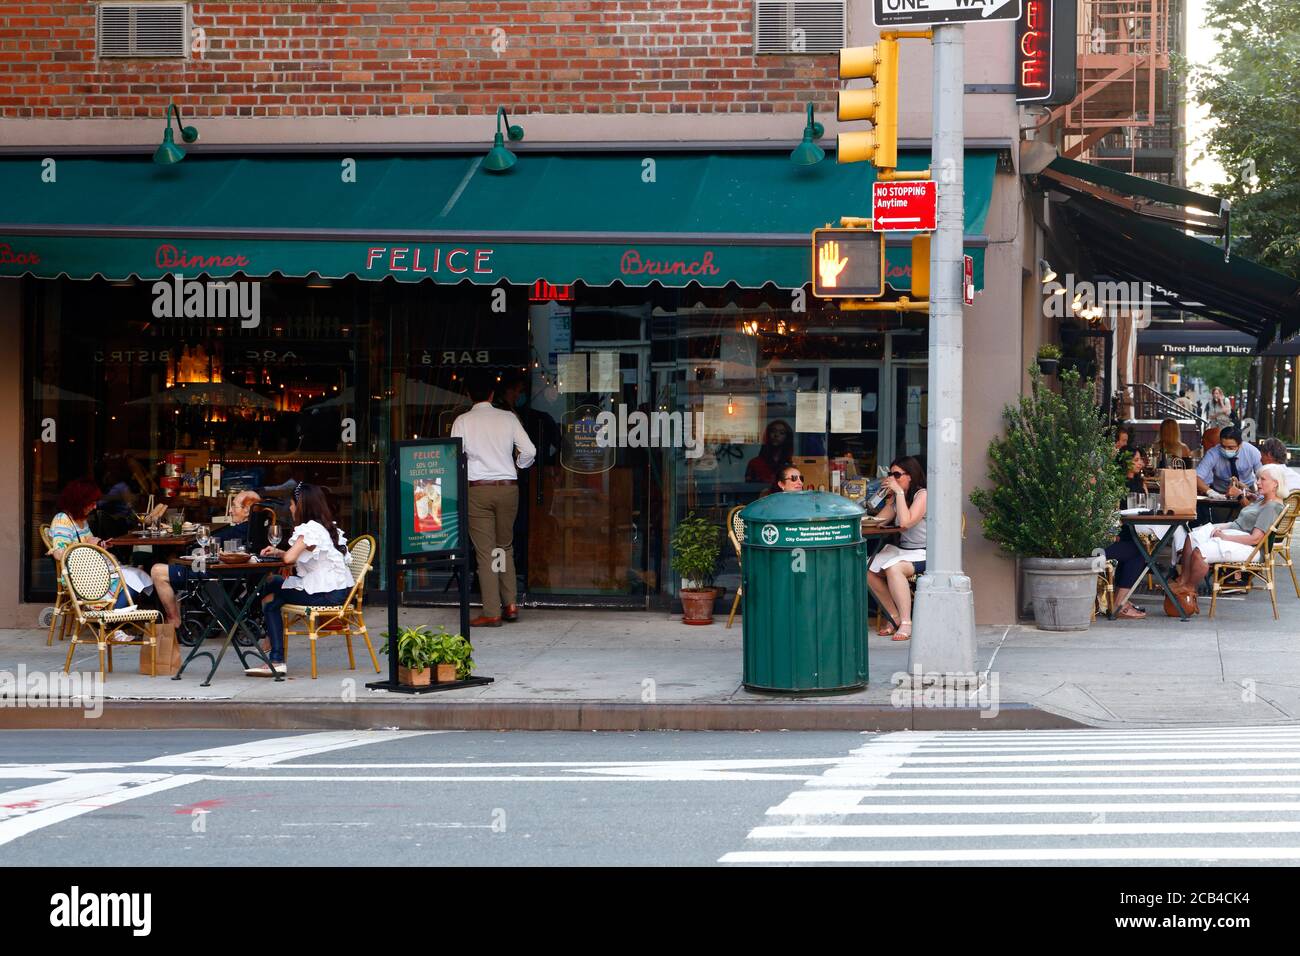 Felice 83, 1593 First Ave, New York, NYC foto del negozio di una catena di ristoranti italiani e caffè sul marciapiede nell'Upper East Side di Manhattan Foto Stock